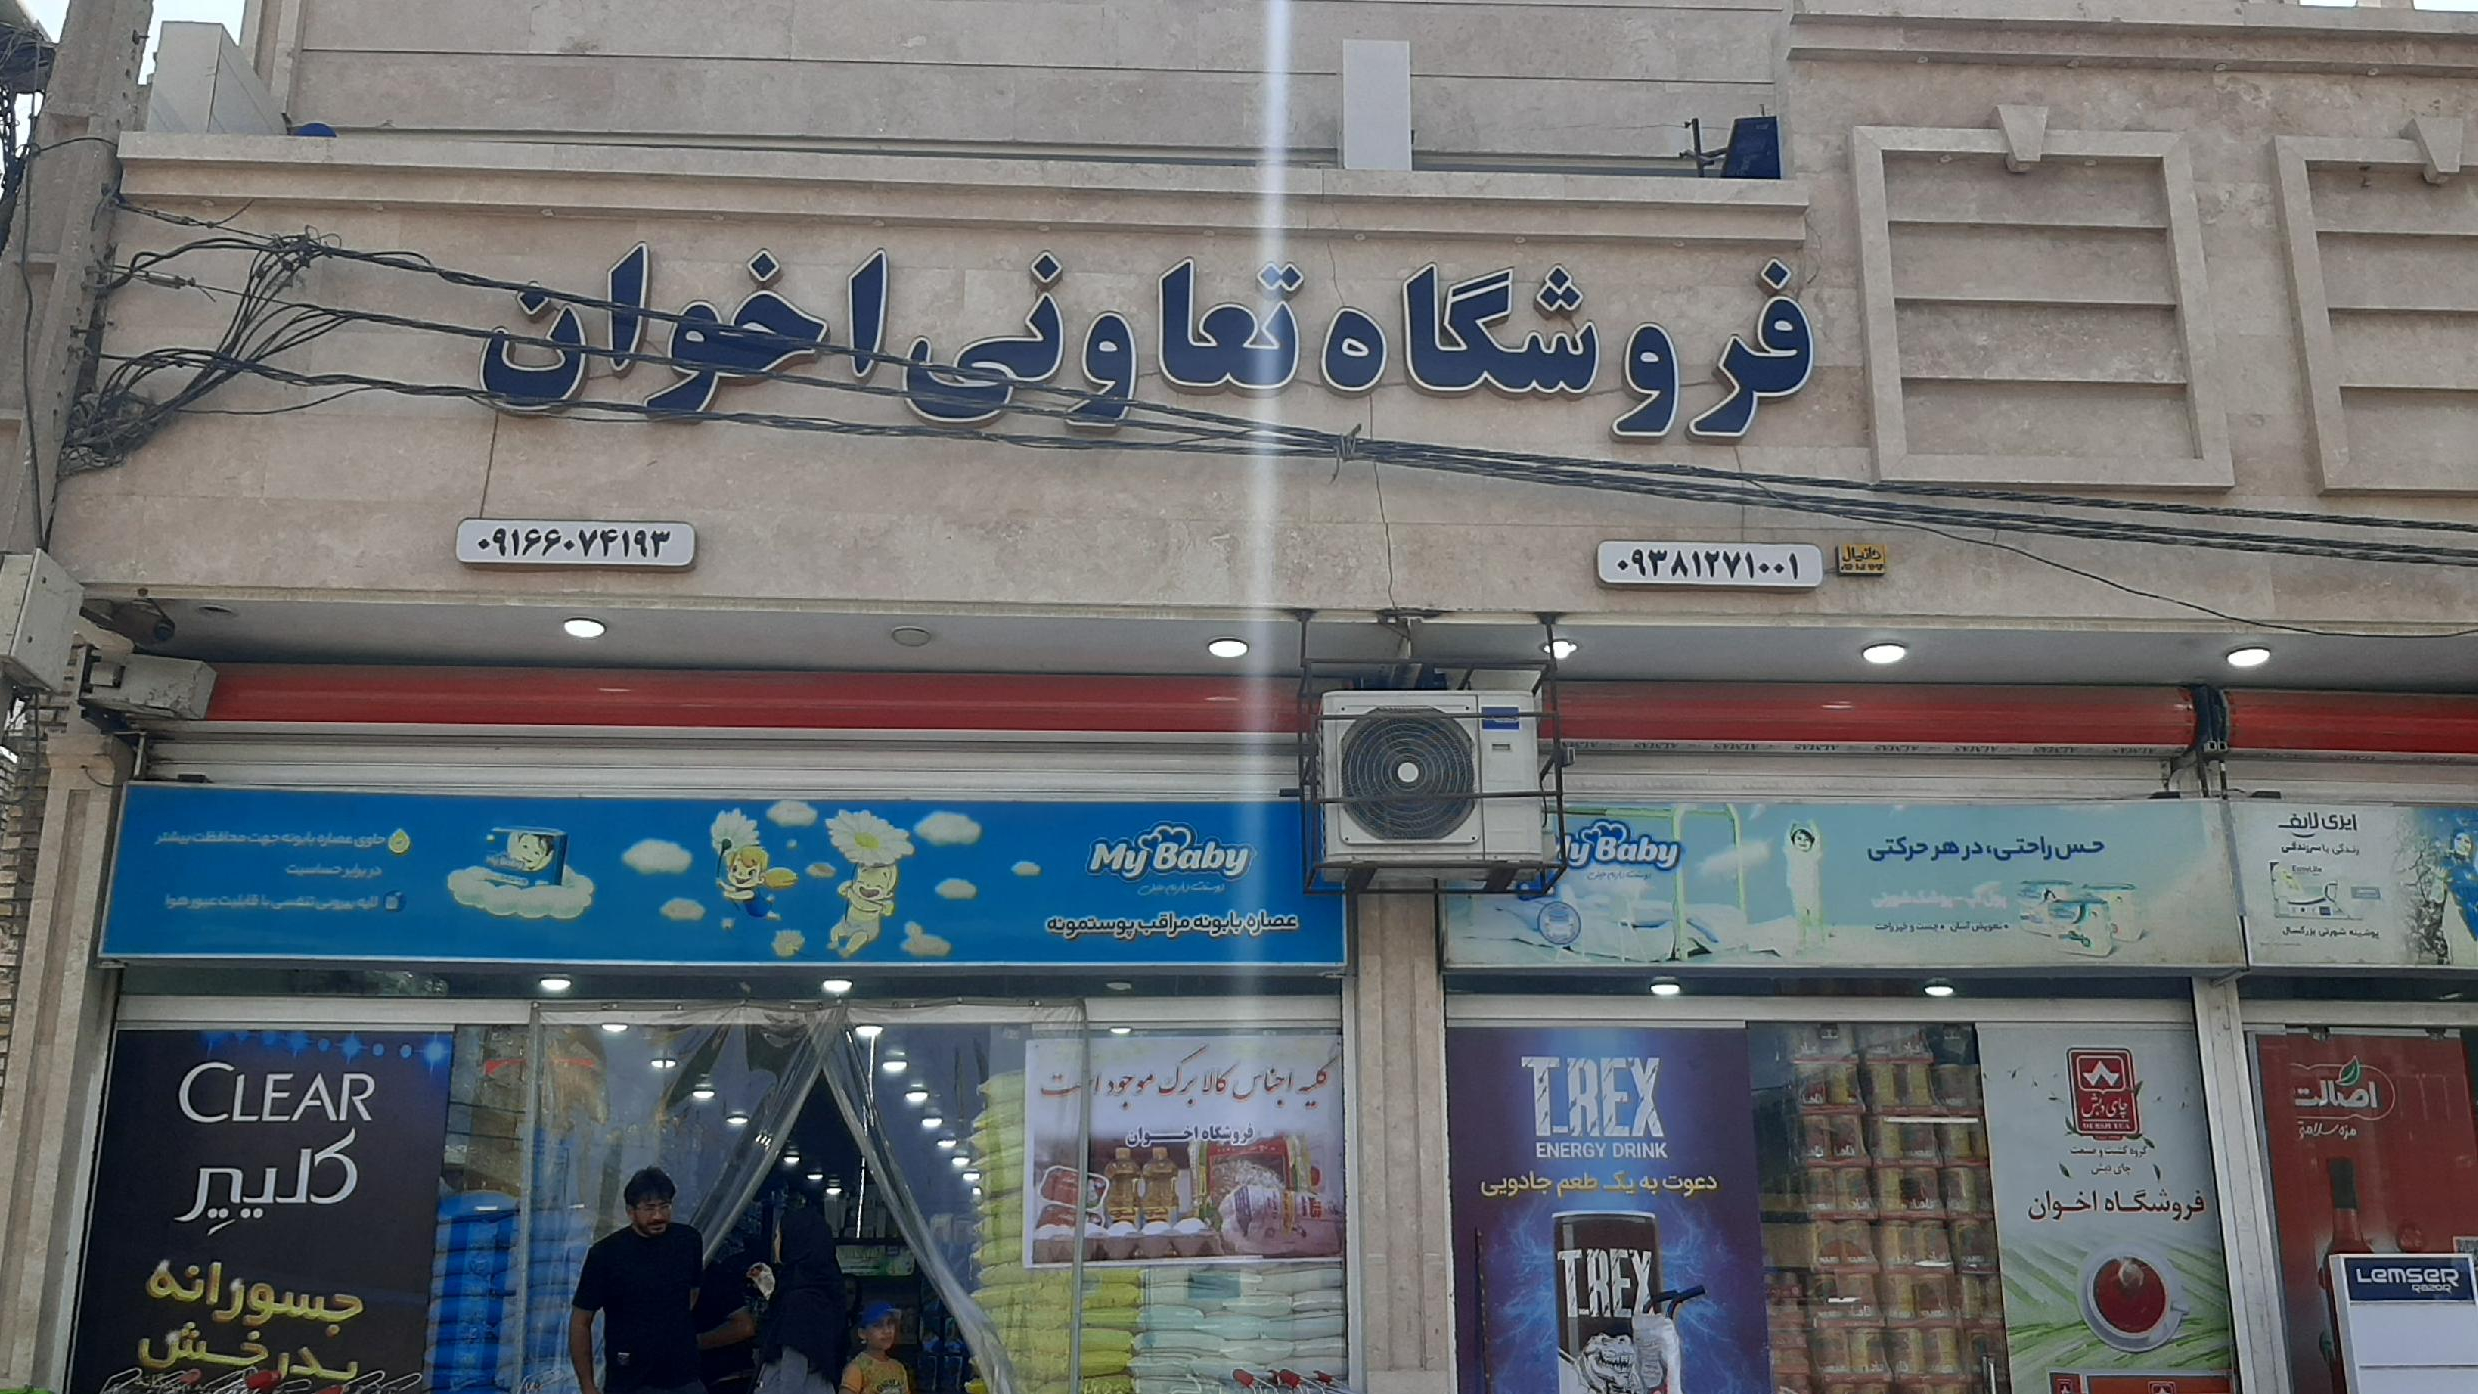 فروشگاه اخوان (سعید سعیدی)